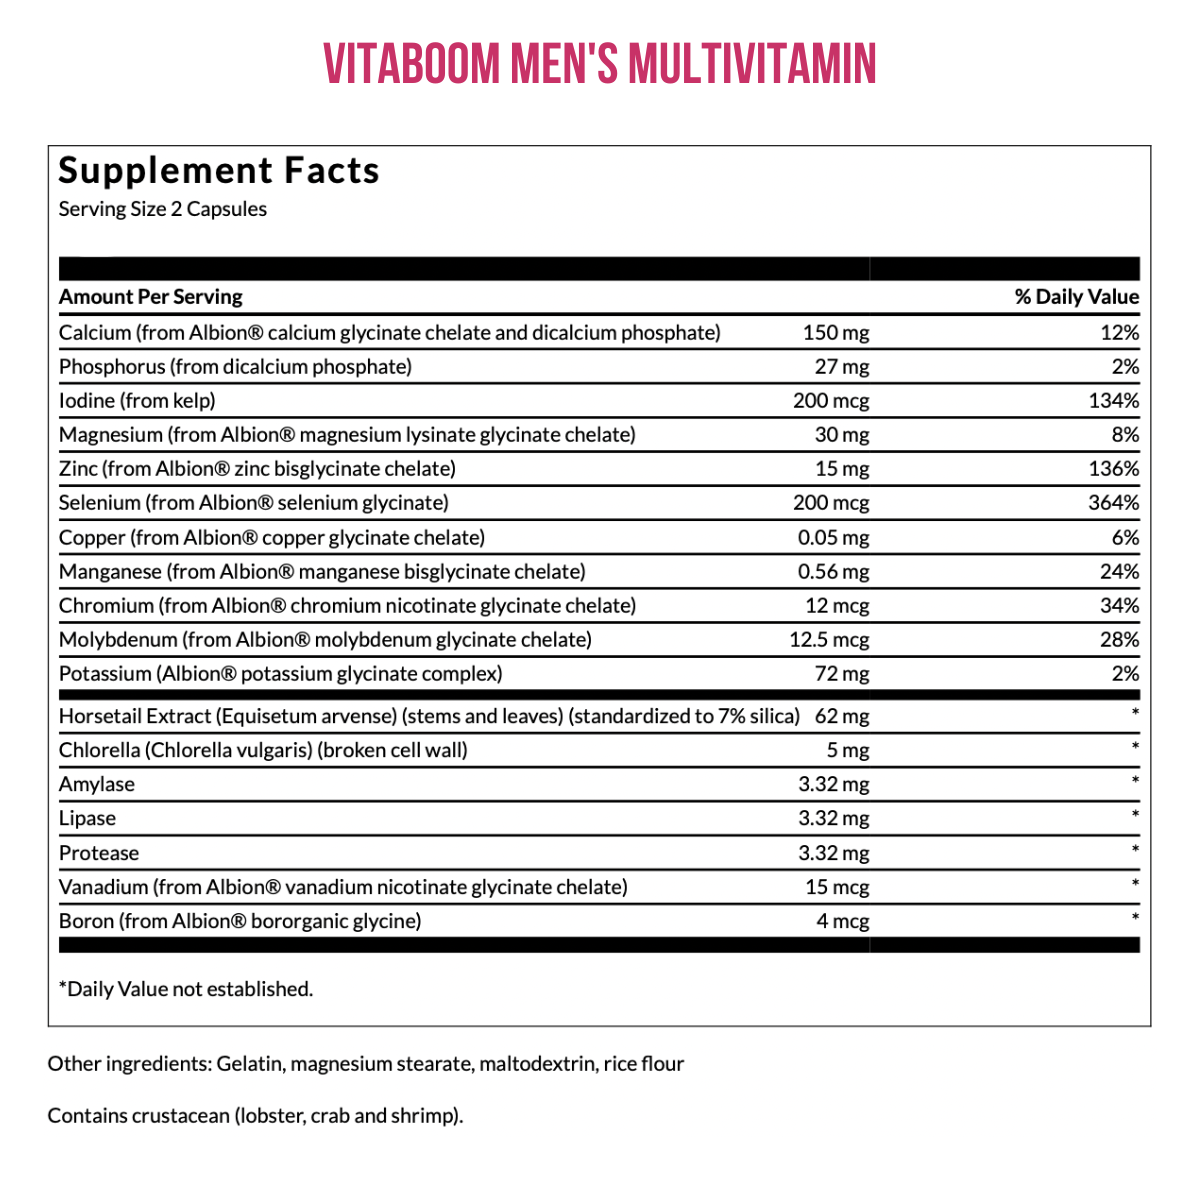 Vitaboom | Men's Foundation